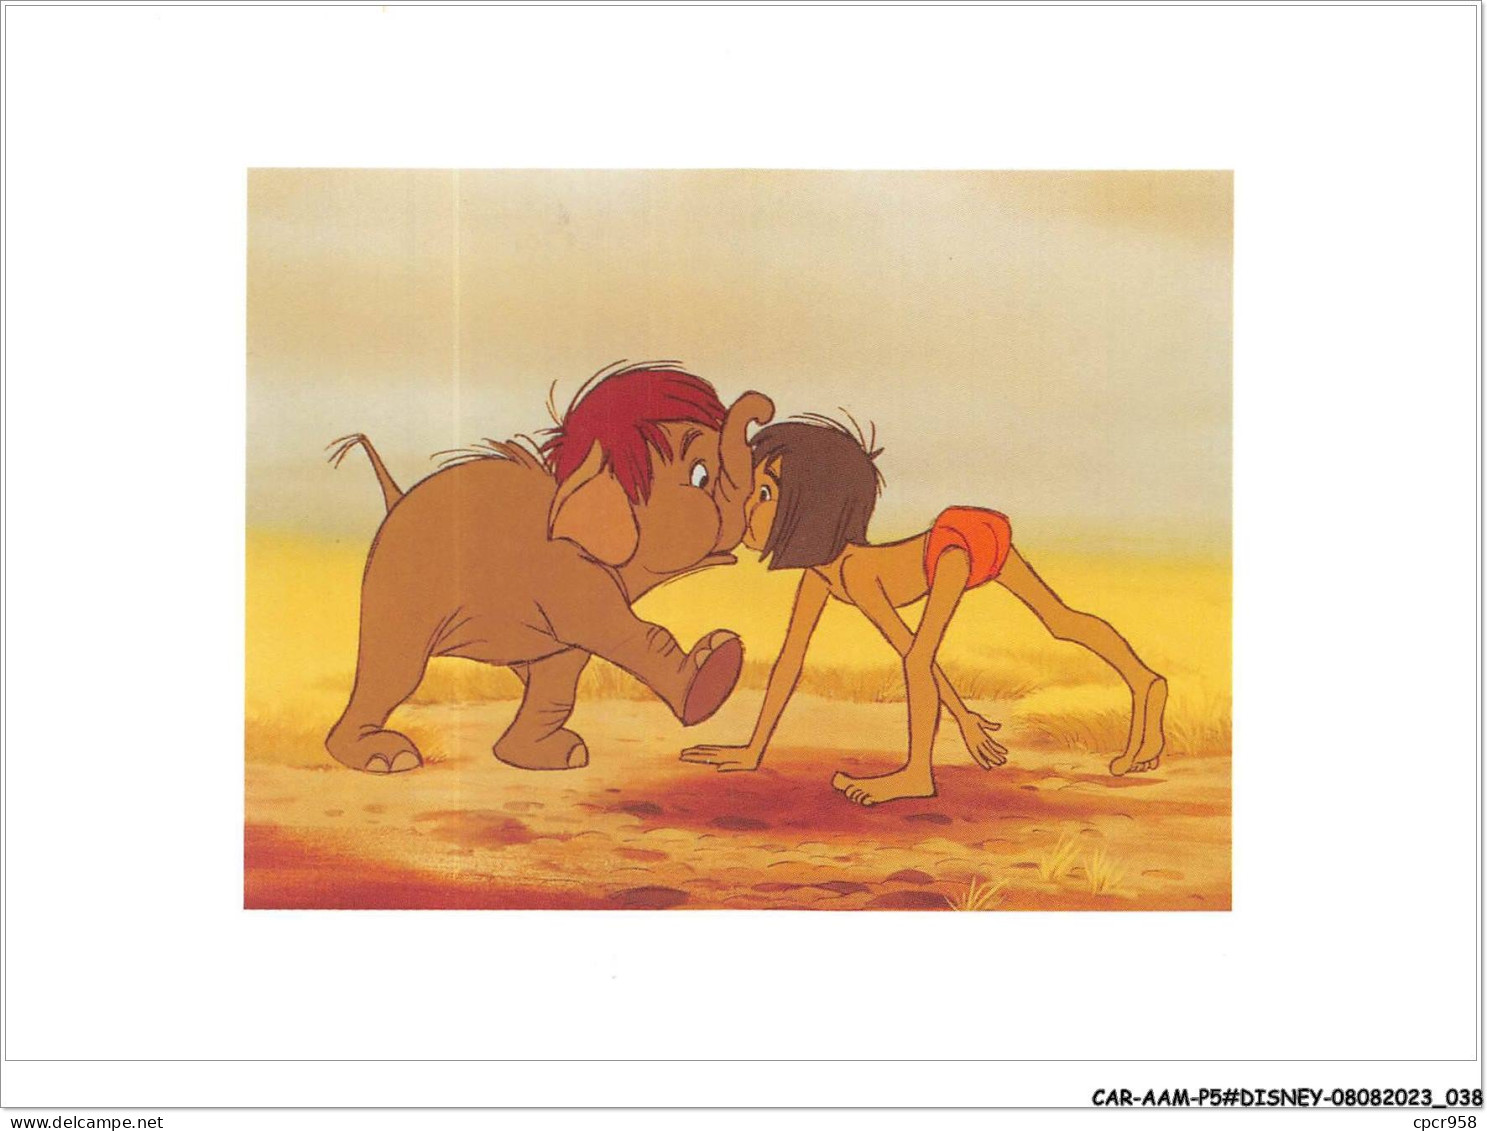 CAR-AAMP5-DISNEY-0427 - Le Livre De La Jungle - Mowgli Falls In With The Colonel's Son - Disneyland